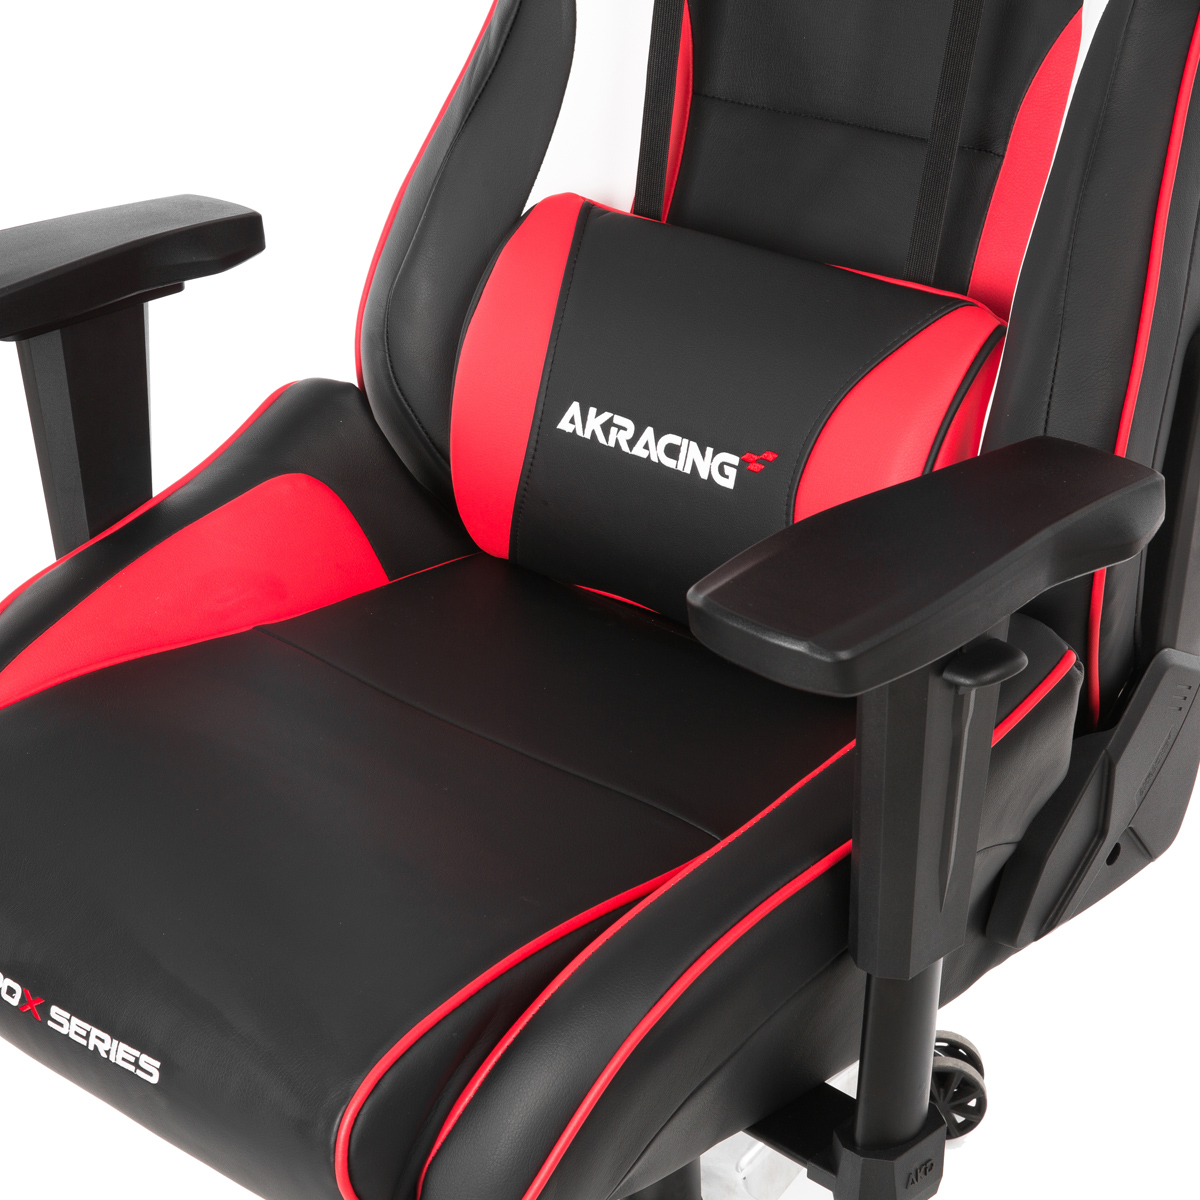 27037円 １着でも送料無料 AKRacing ゲーミングチェア Nitro V2 Gaming Chair Red 高耐久PUレザー素材を張地に採用 NITRO V2シリーズ